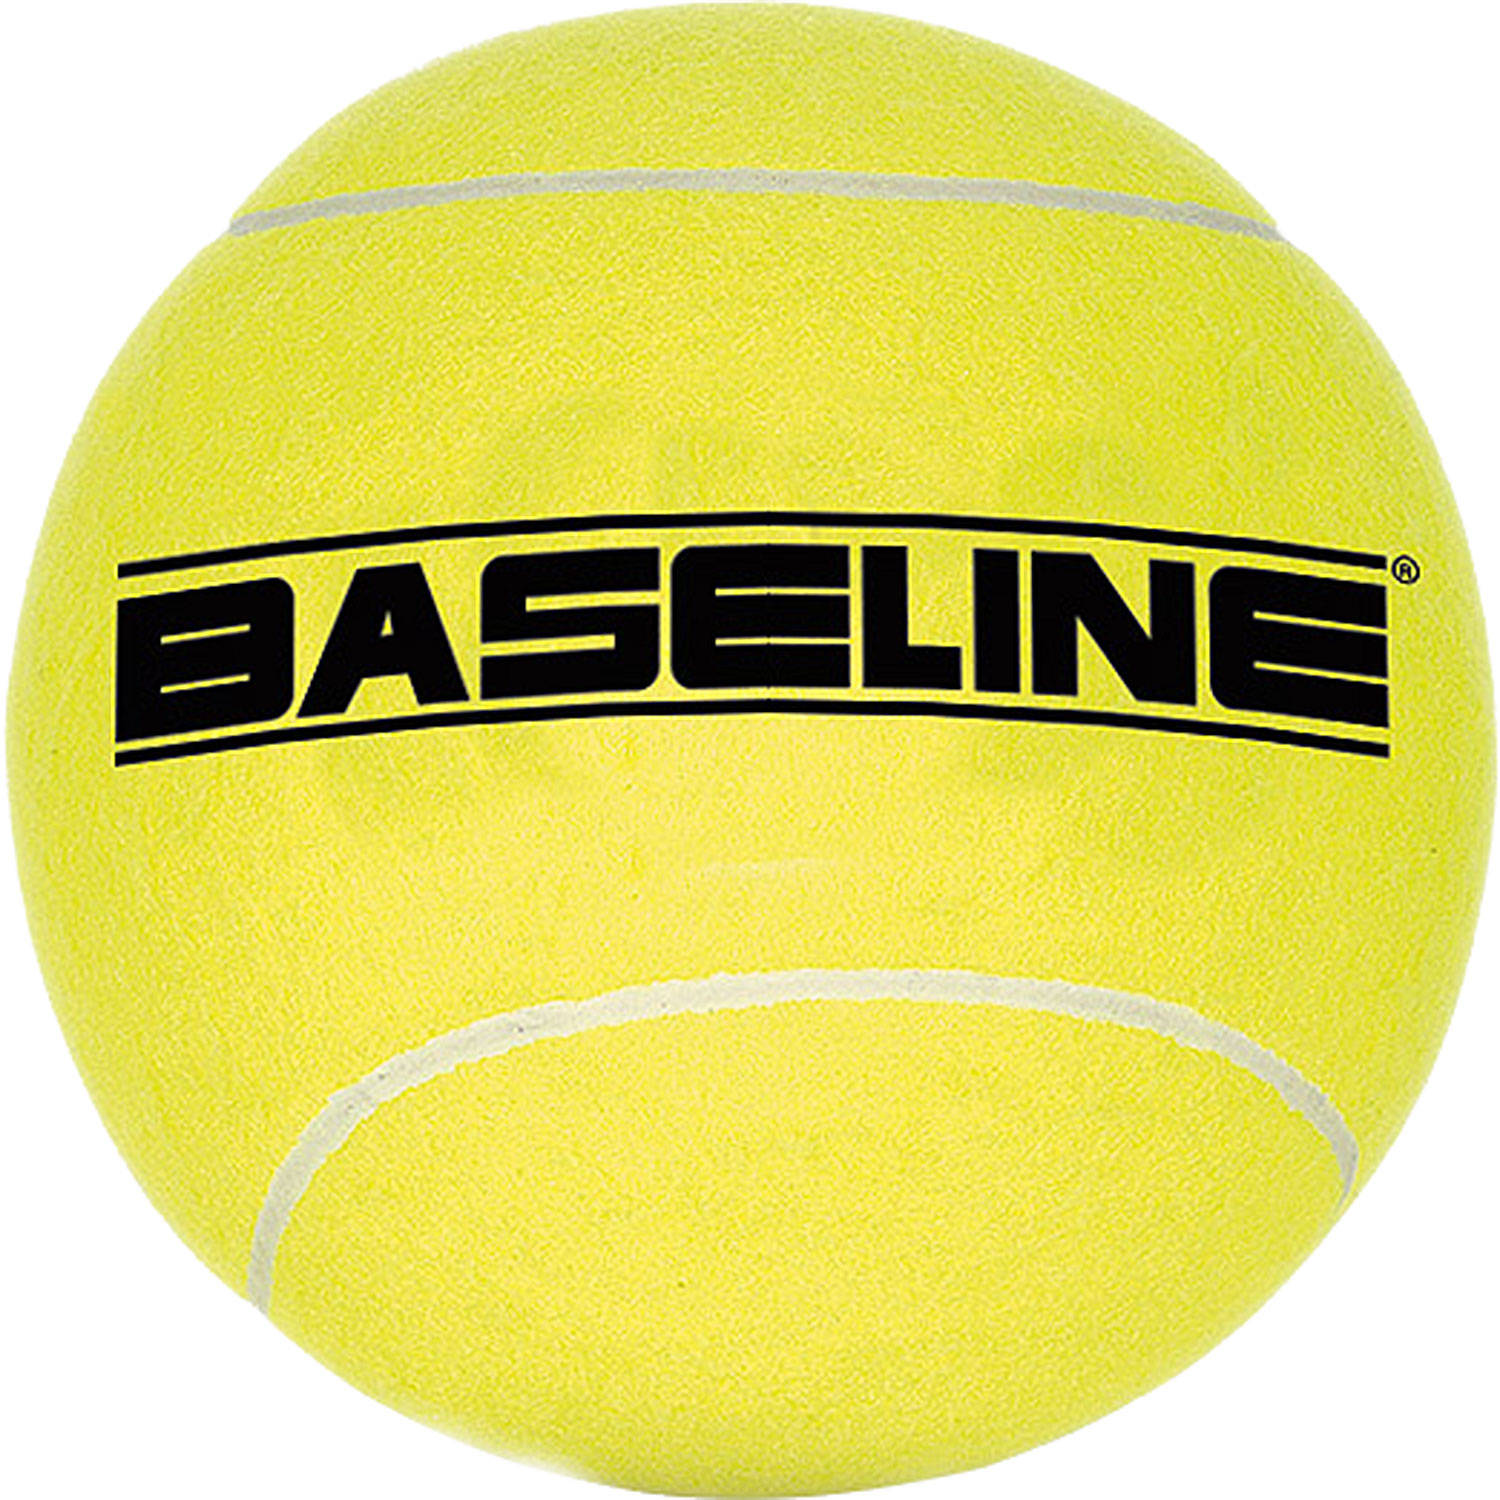 Baseline grote tennisbal geel maat 5